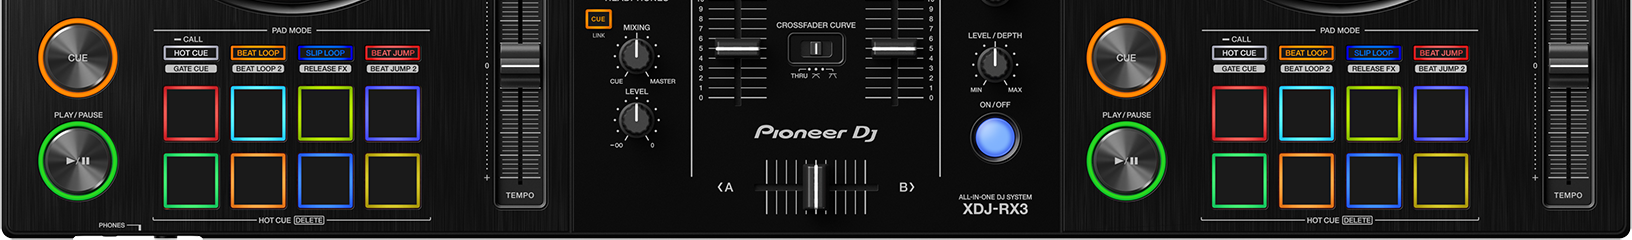 Pioneer XDJ-RX3 - Performance FX